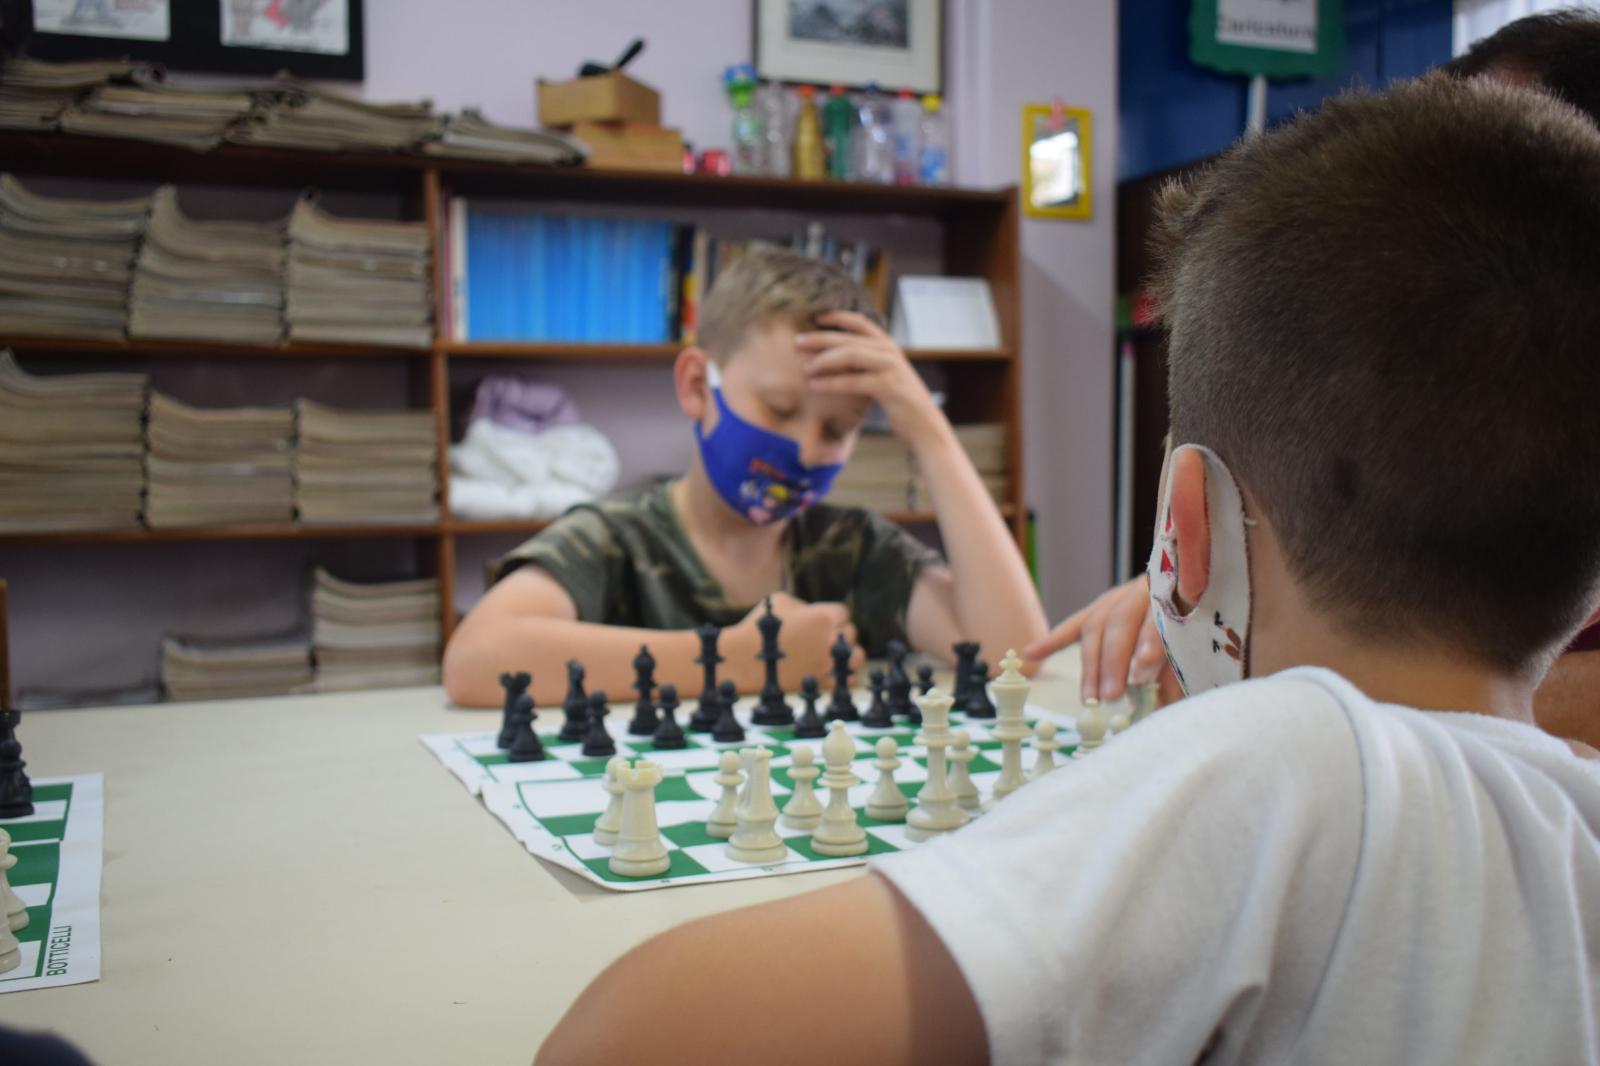 Primeiros ensinamentos sobre xadrez em 5 passos 